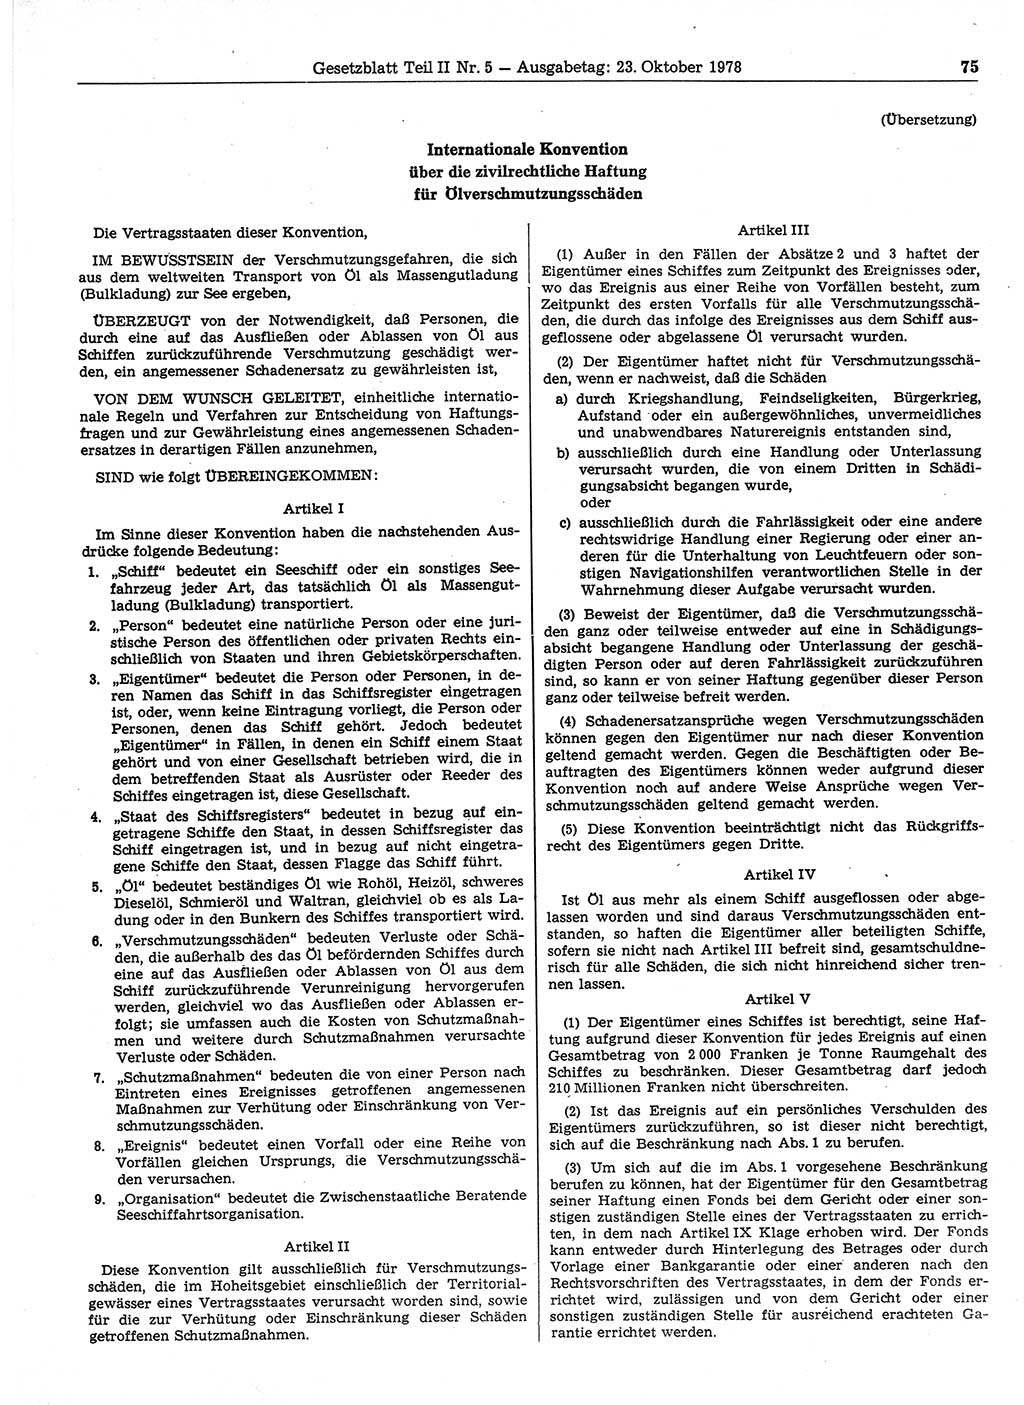 Gesetzblatt (GBl.) der Deutschen Demokratischen Republik (DDR) Teil ⅠⅠ 1978, Seite 75 (GBl. DDR ⅠⅠ 1978, S. 75)